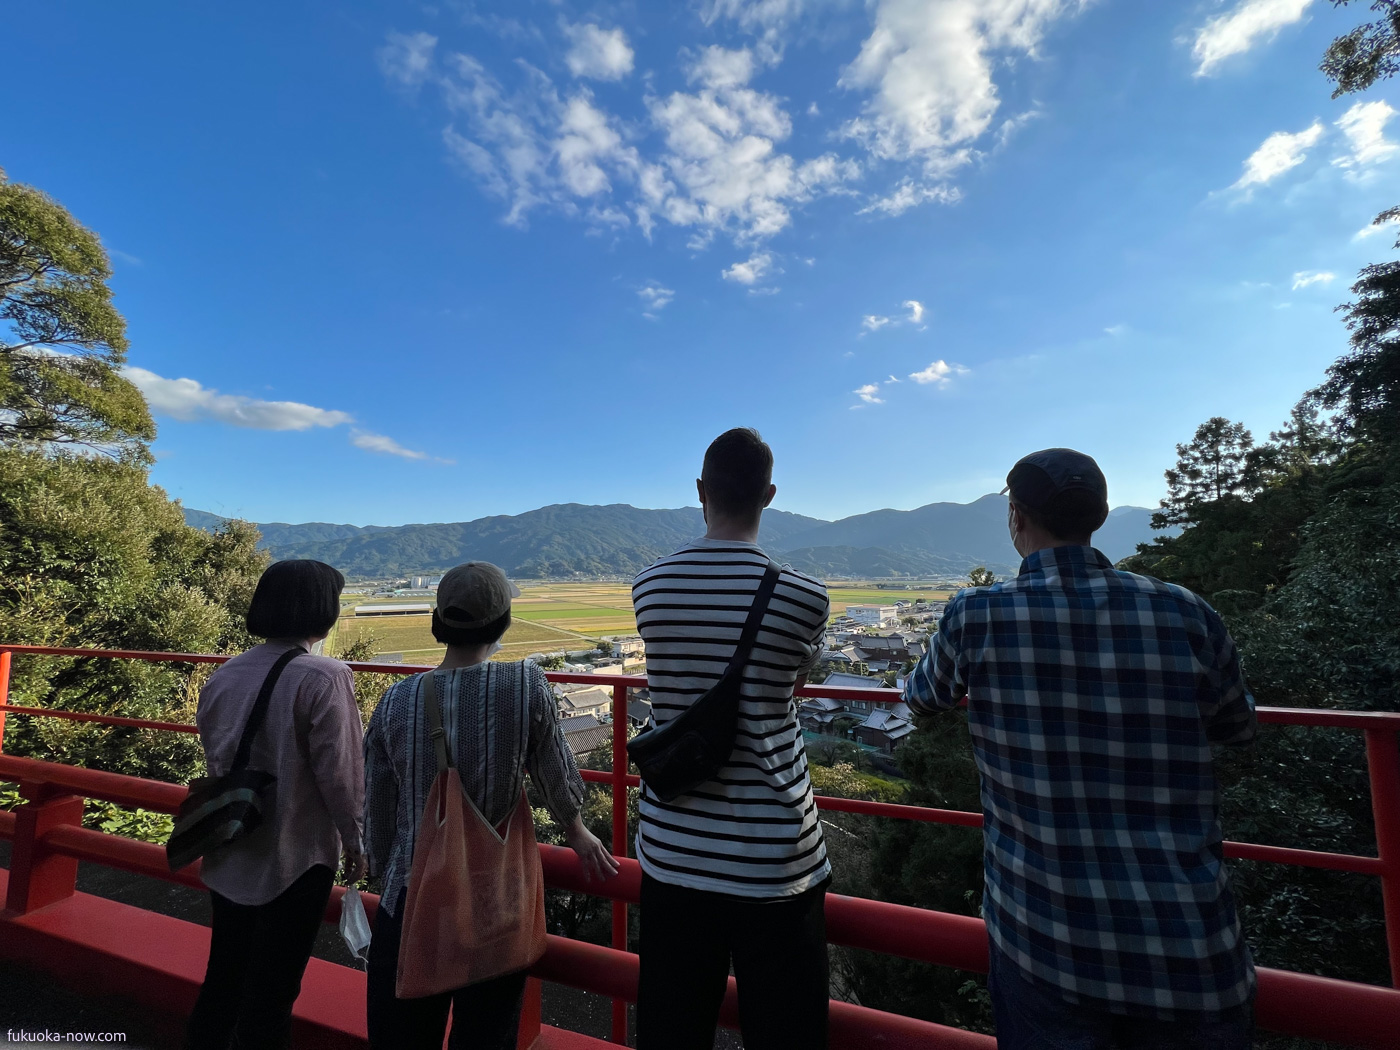 View from Masue Goro Inari Shrine in Itoshima, 糸島の松末五郎稲荷神社からの眺め